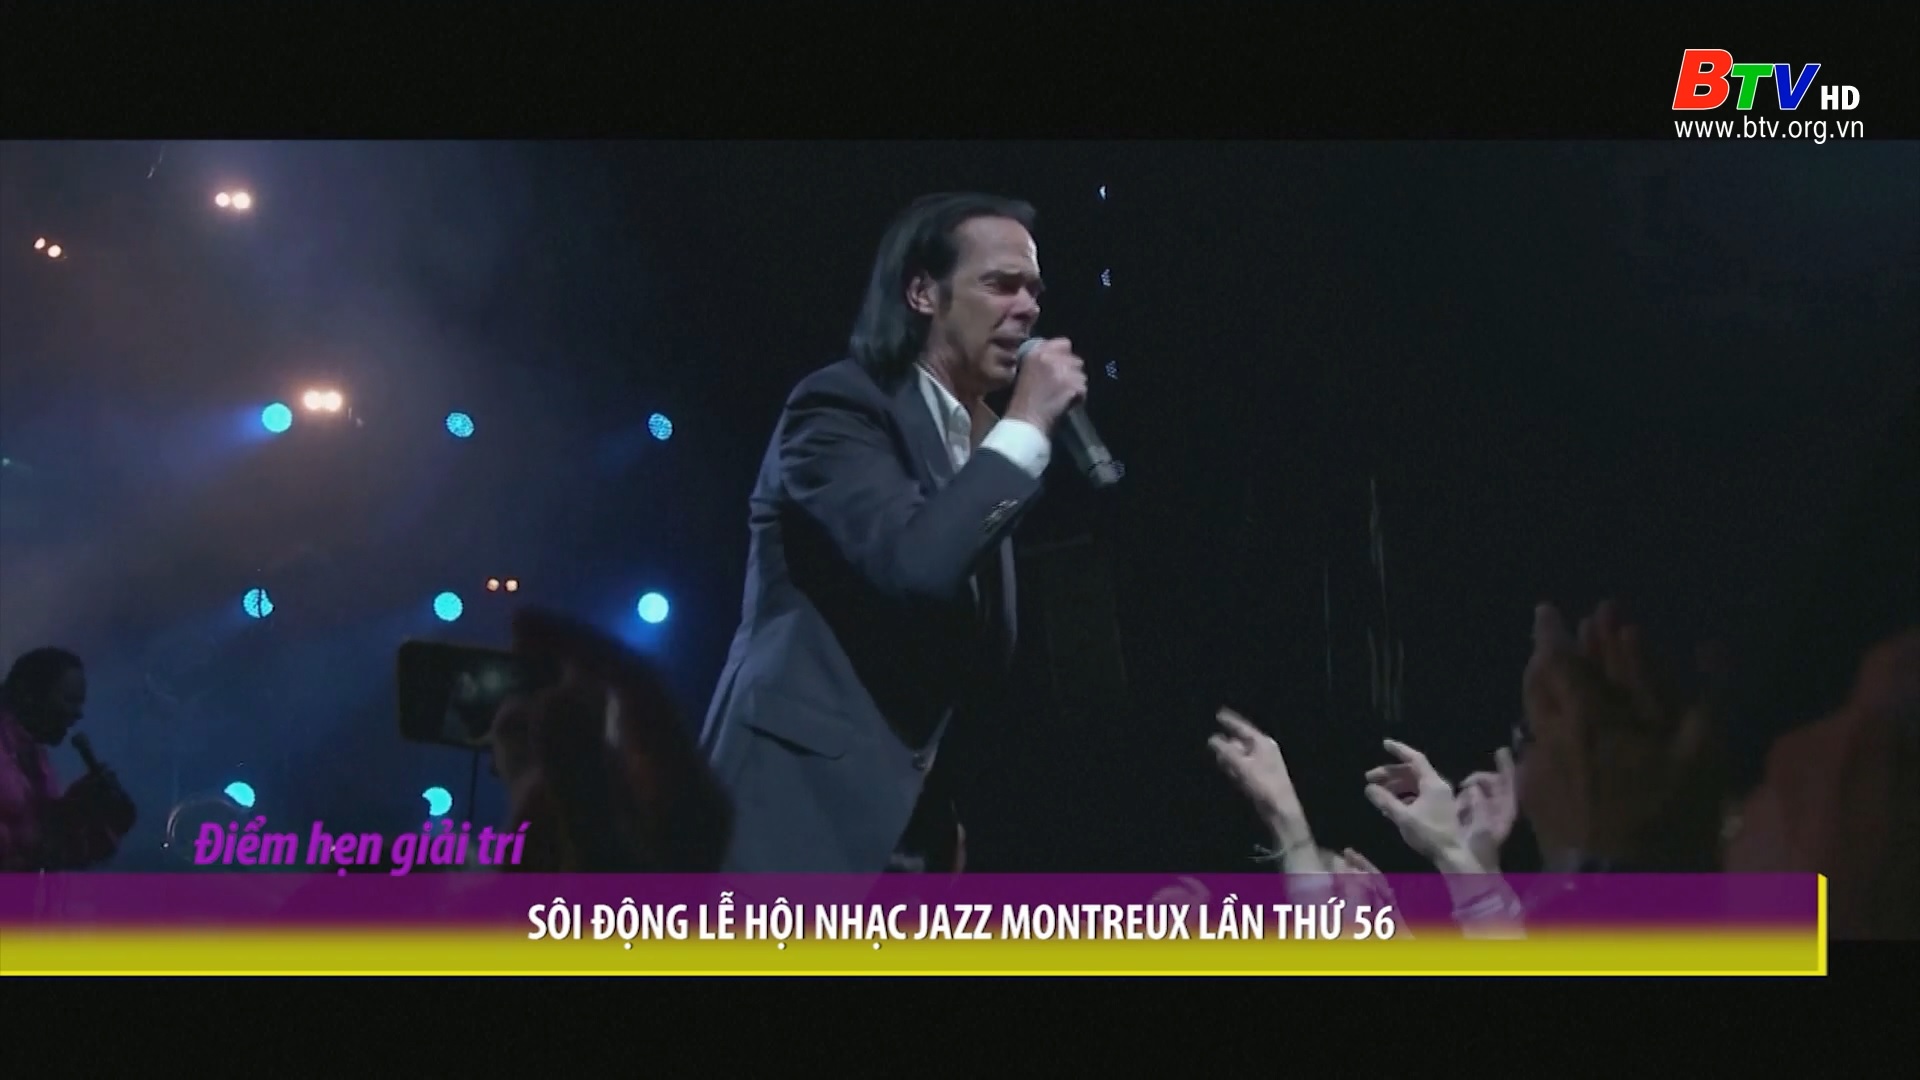 Sôi động lễ hội nhạc Jazz Montreux lần thứ 56